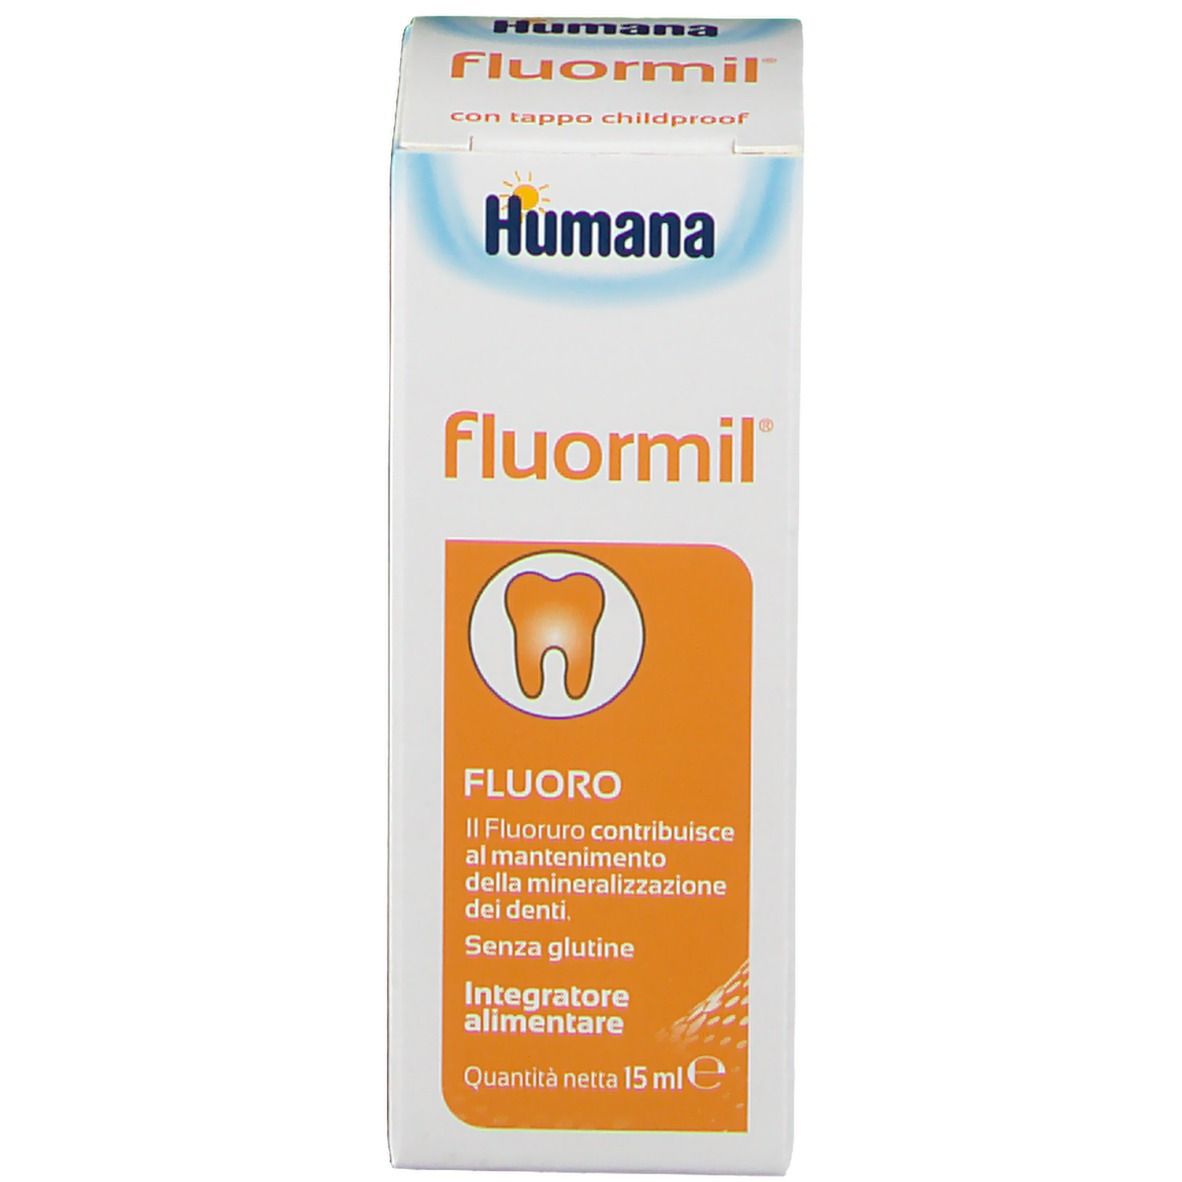 Humana Fluormil®